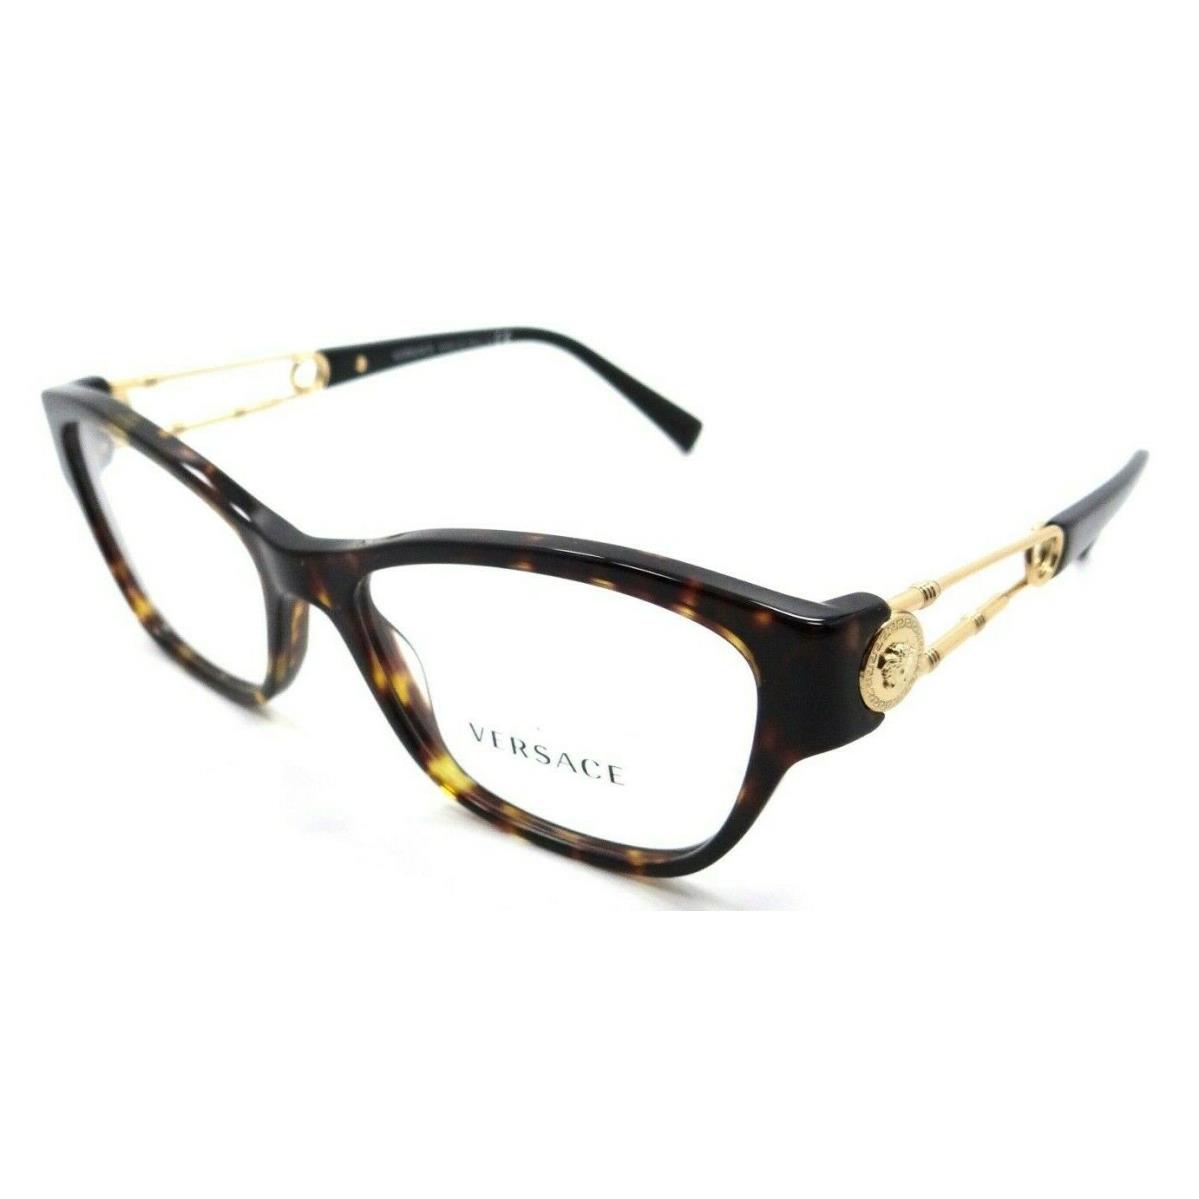 Versace Eyeglasses Frames VE 3288 108 54-16-140 Dark Havana Made in Italy